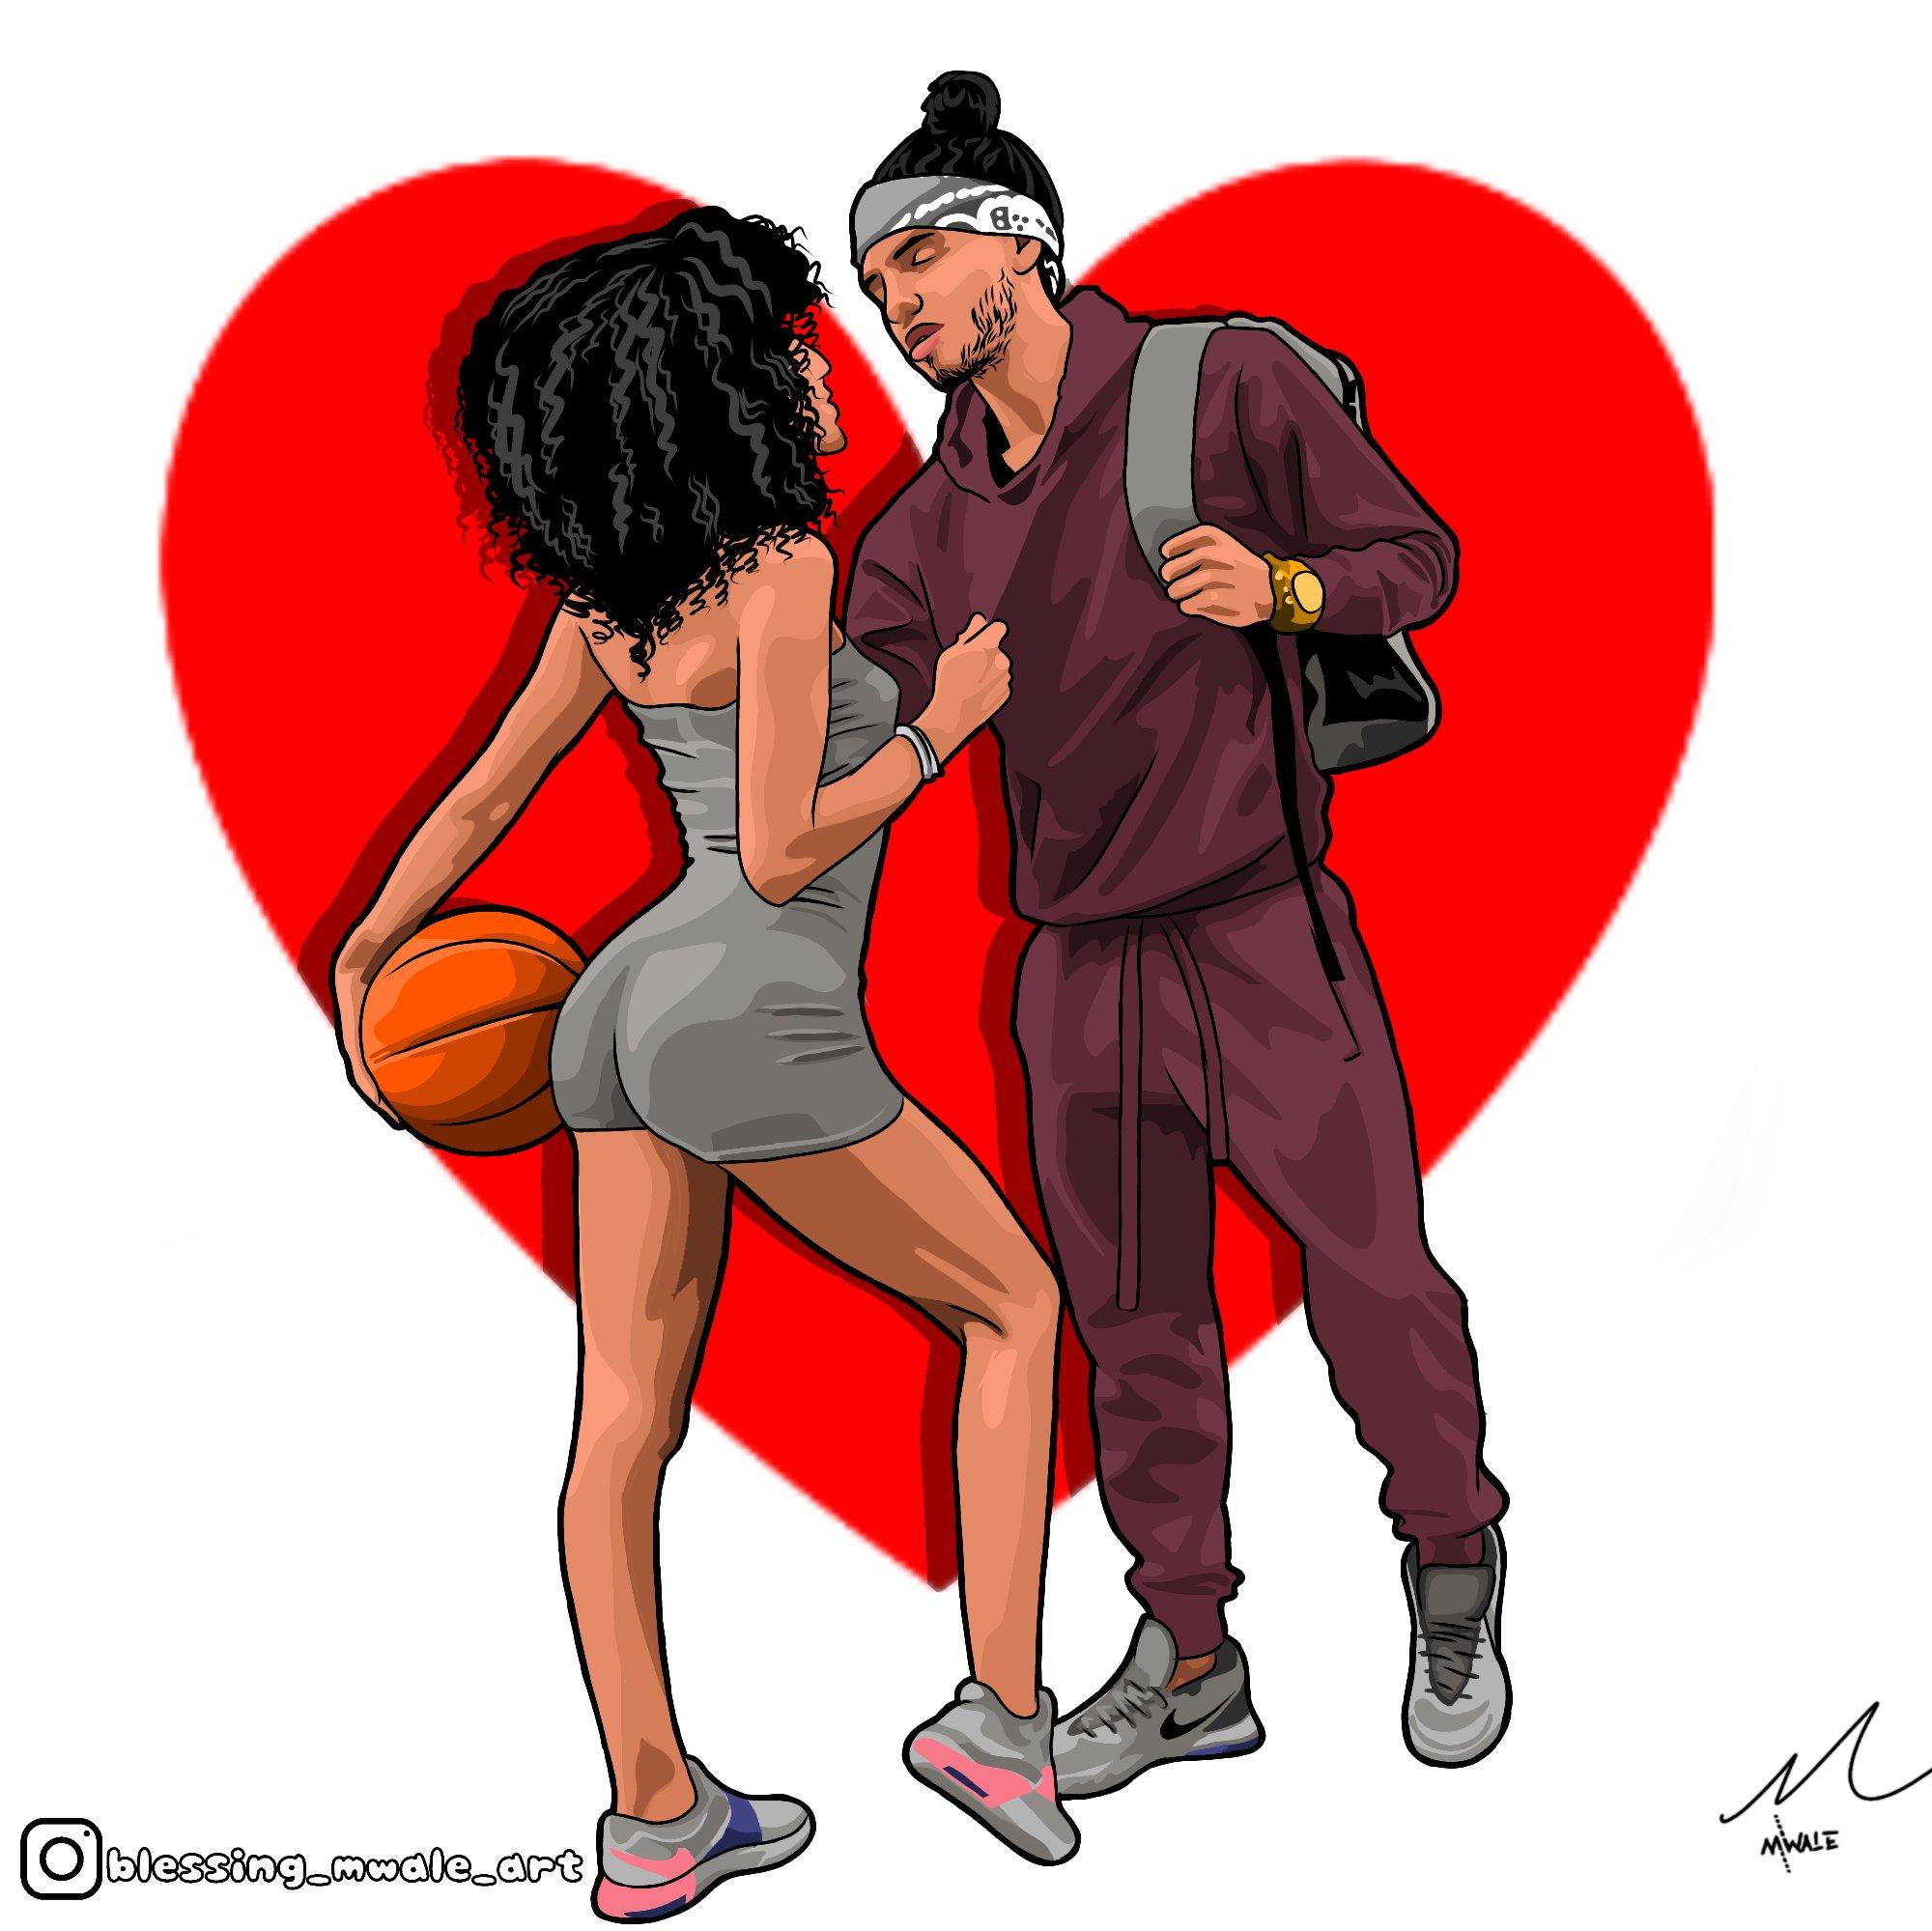 Mwale Art On X Couple Goals Follow My Instagram